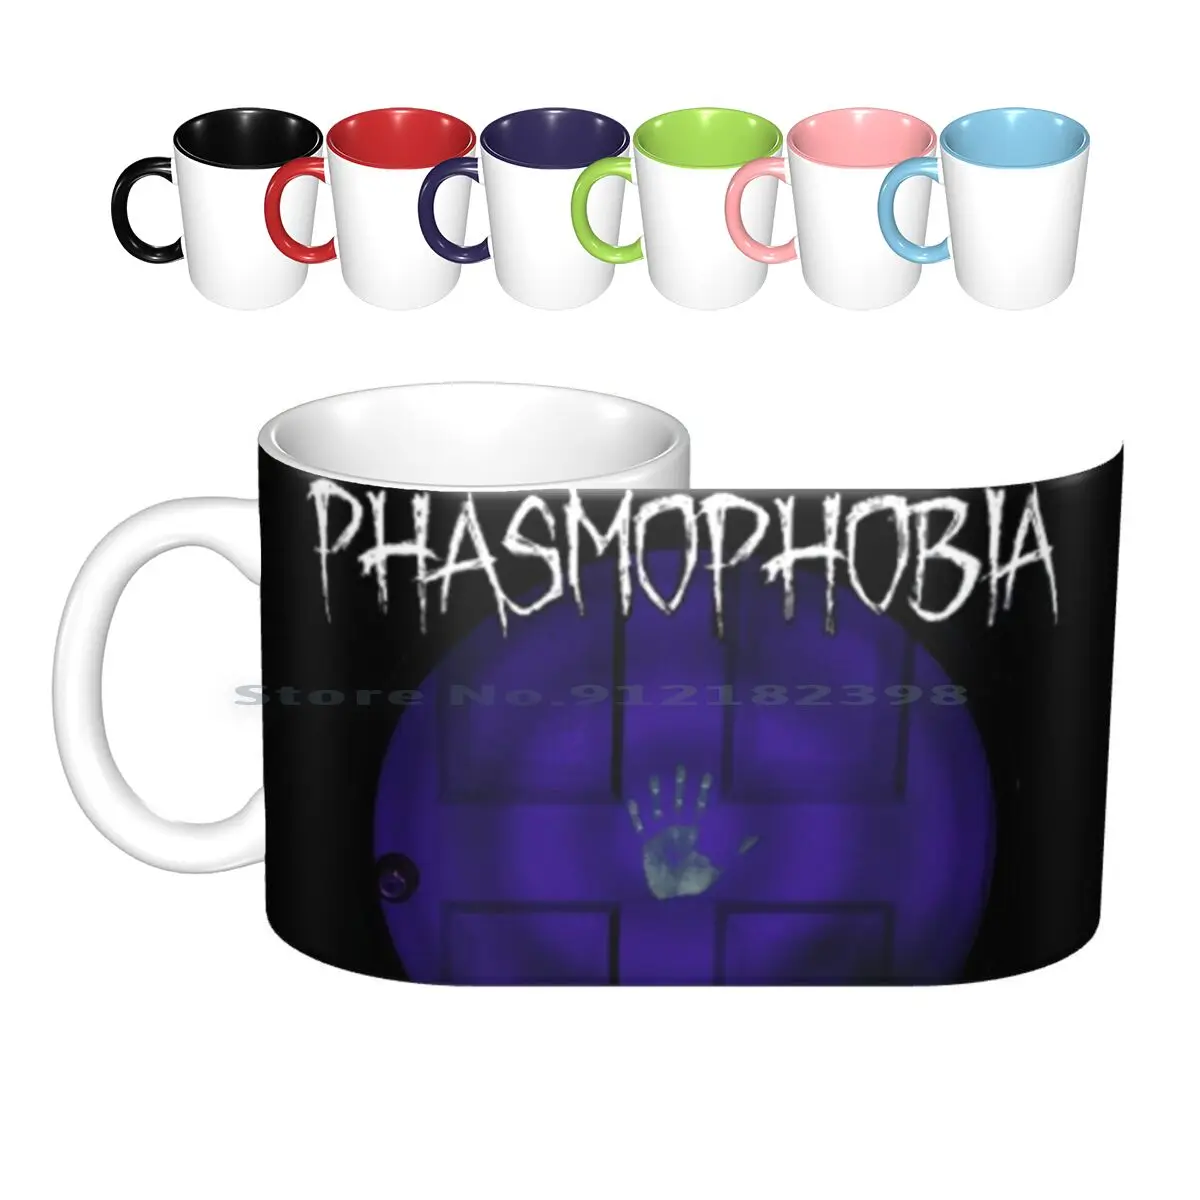 

Фармофобия, керамические кружки с отпечатками пальцев, кофейные чашки, кружка для молока и чая, фазмофобия, видеоигры, страшные призраки, креативный тренд